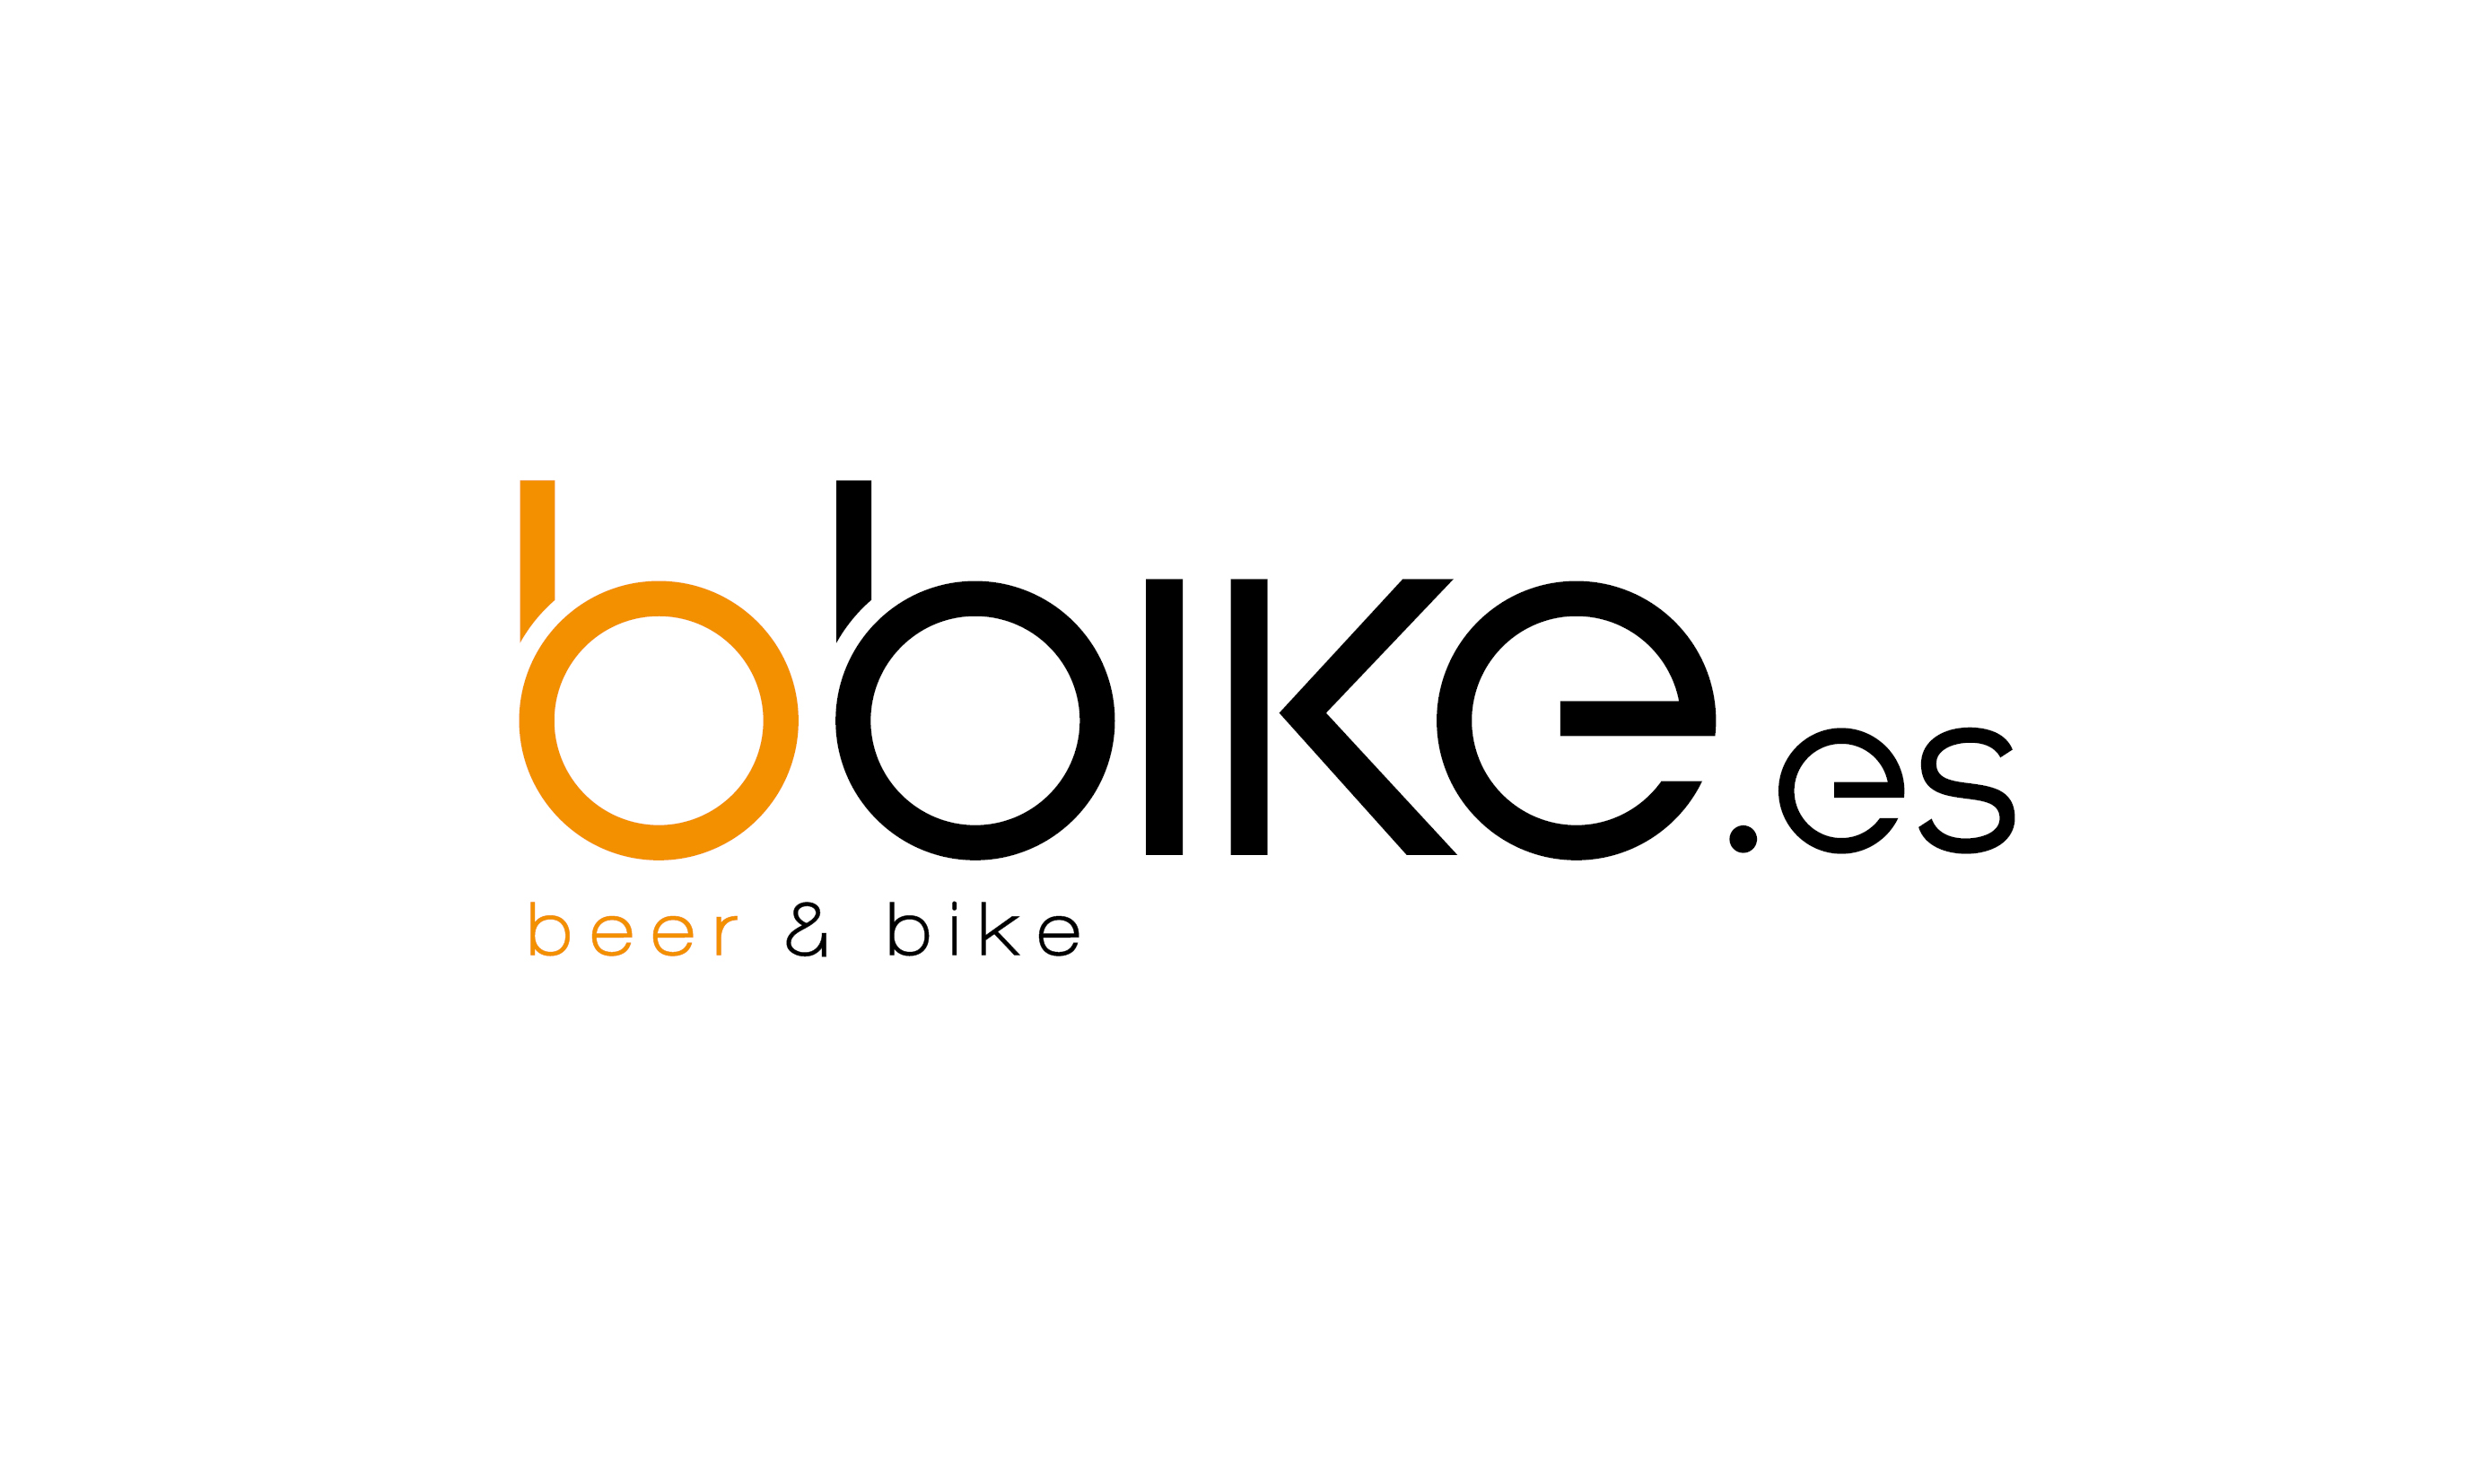 Experiencia y sorteo “Beer & Bike”